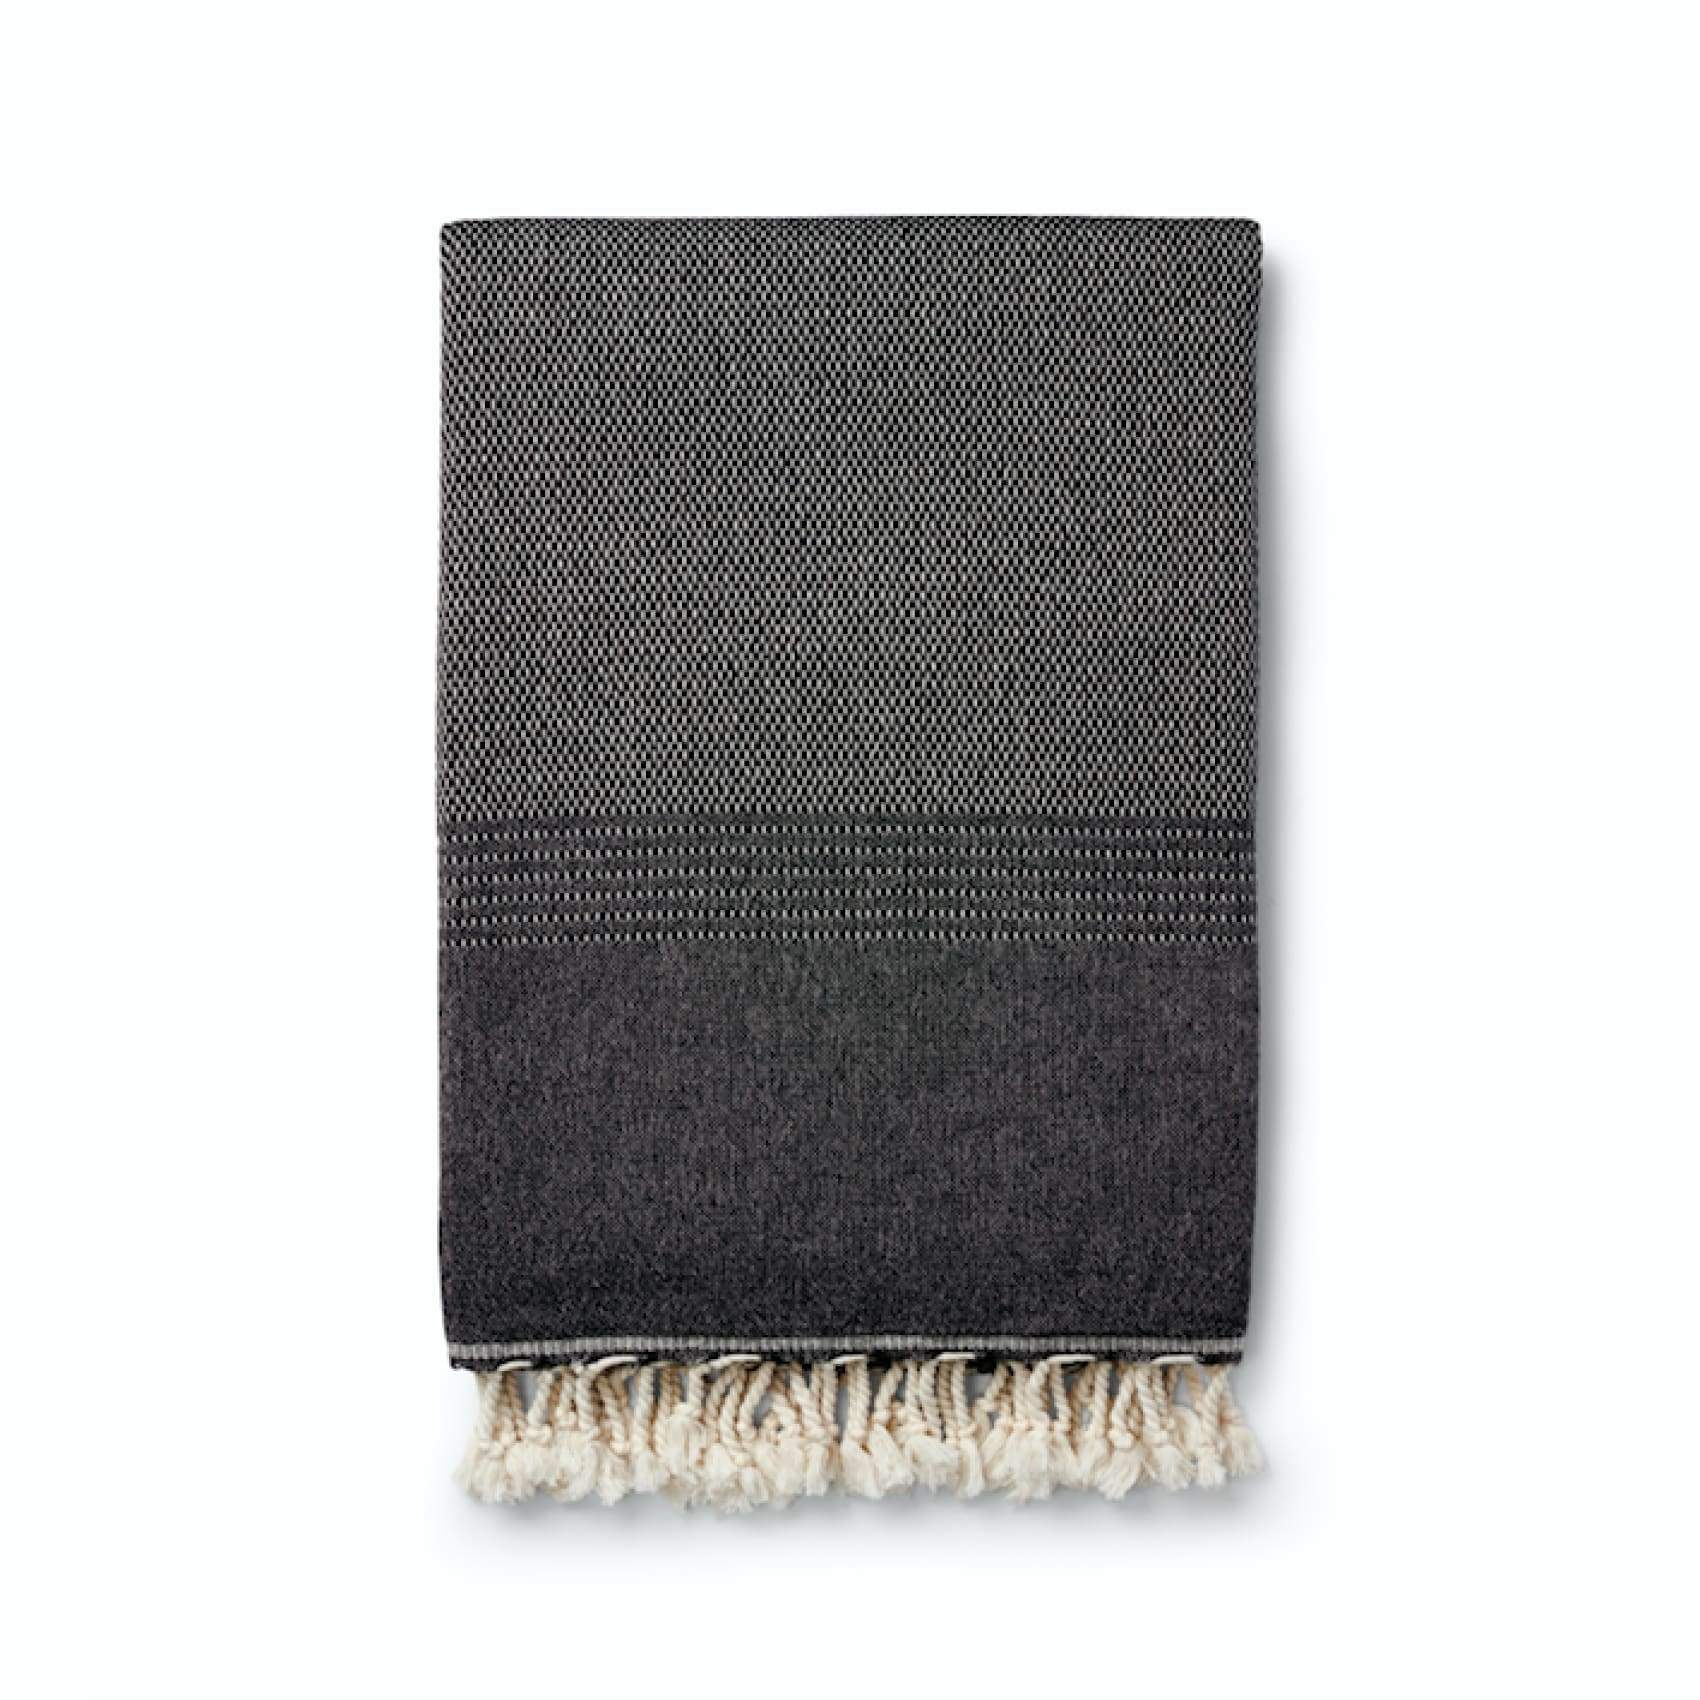 Ekin Cotton & Wool Blend Vintage Style Blankets